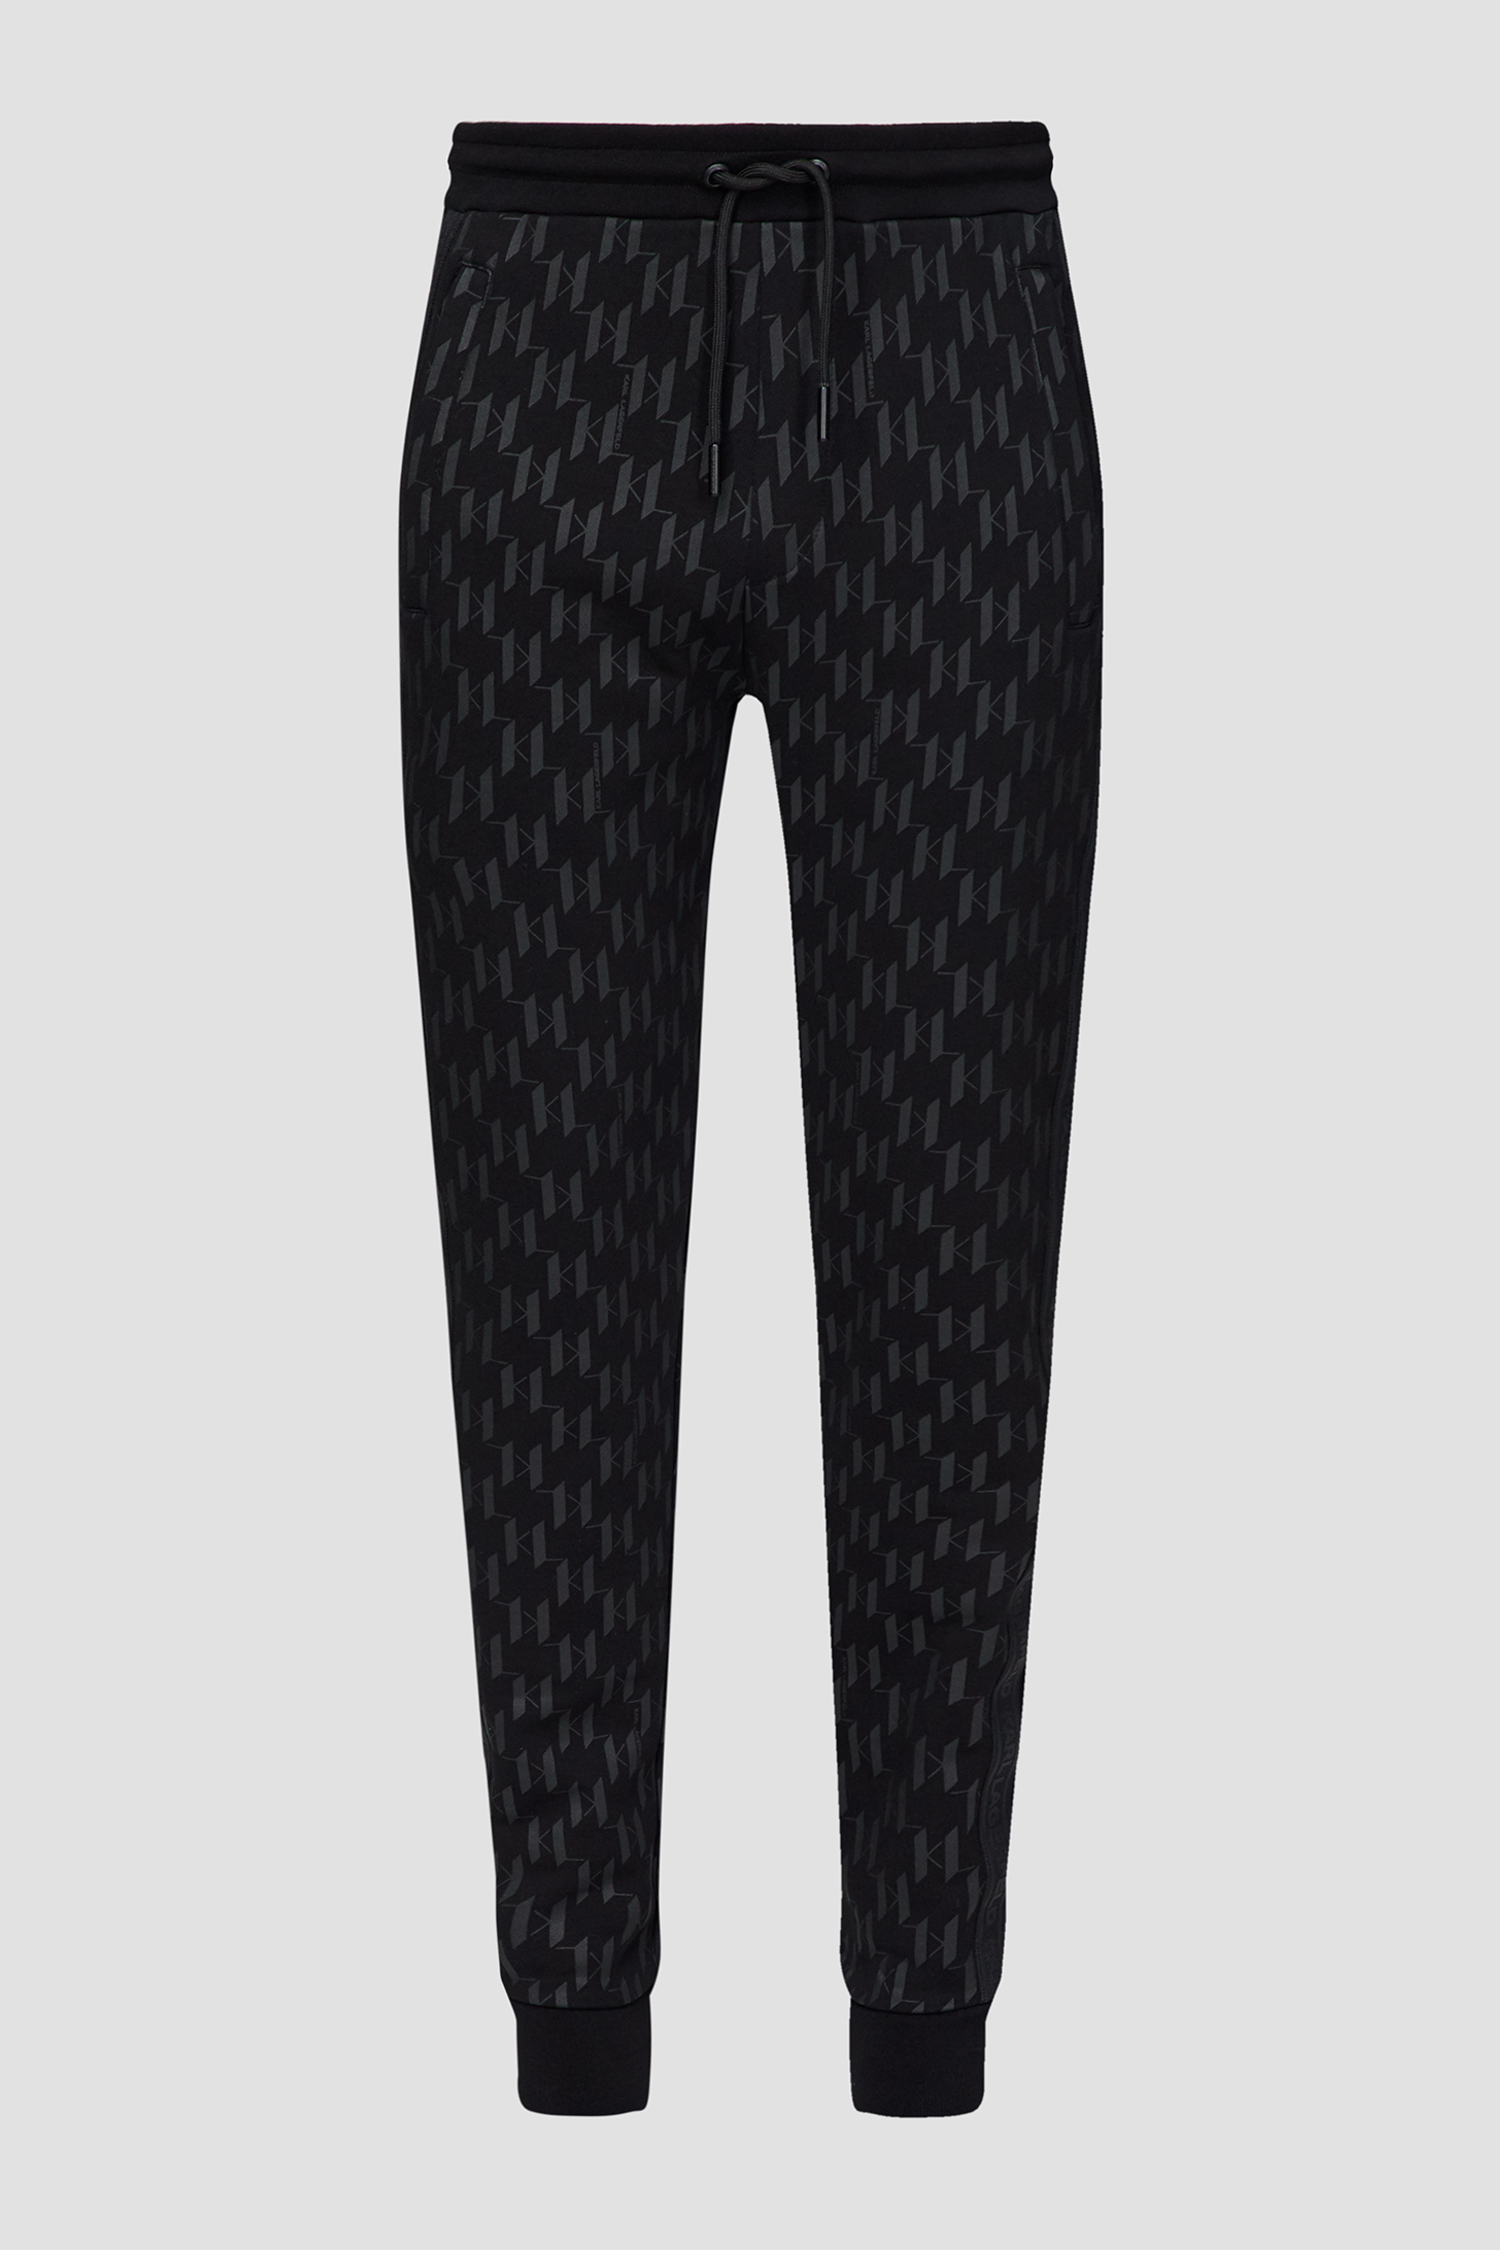 Чоловічі чорні спортивні штани з візерунком Karl Lagerfeld 532951.705077;990